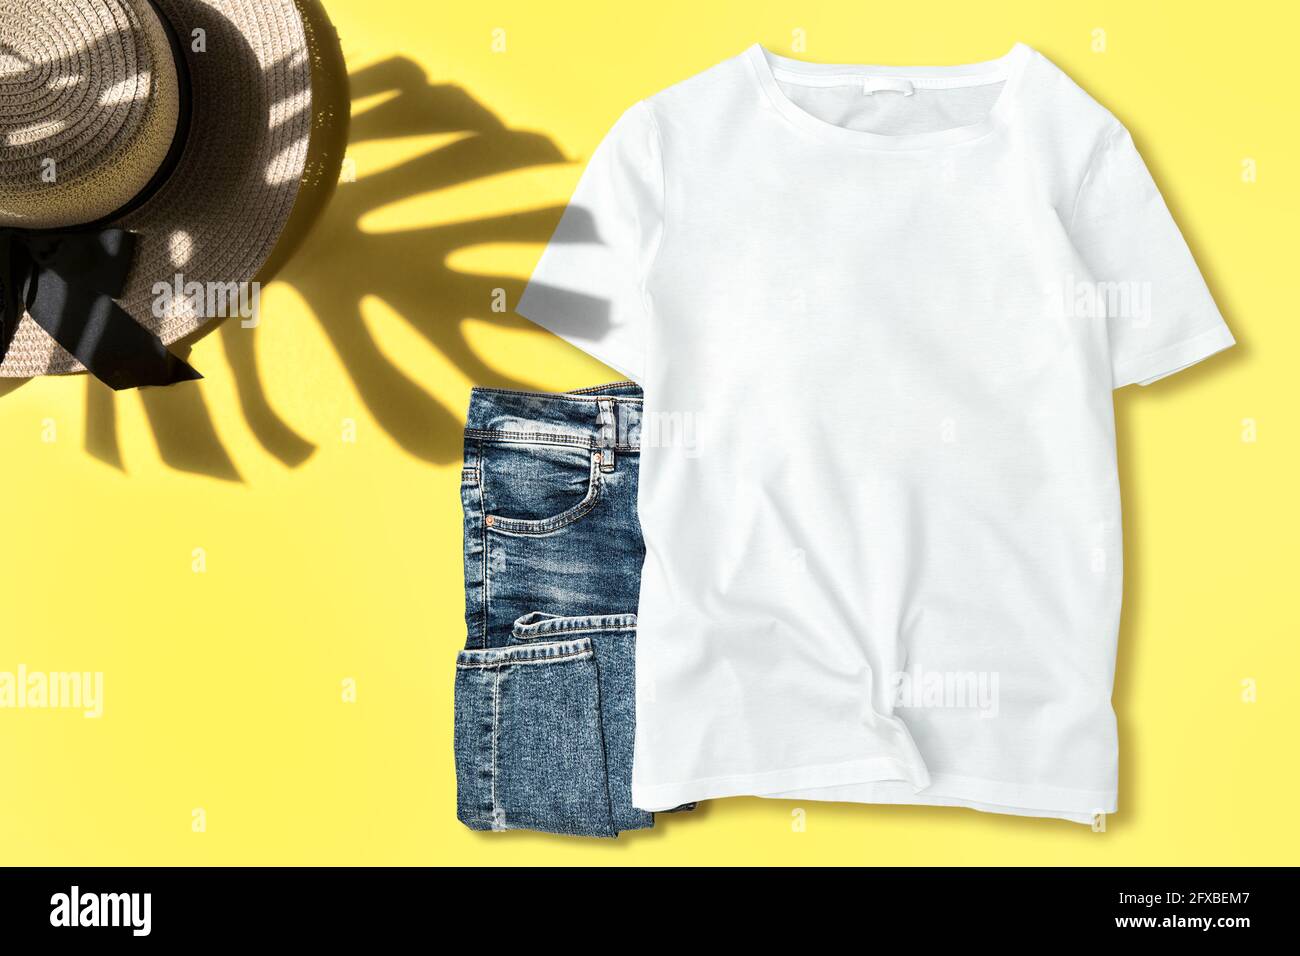 White plain unisex t-shirt mock up shirt mockup. Fashion summer flat lay  Stock Photo - Alamy